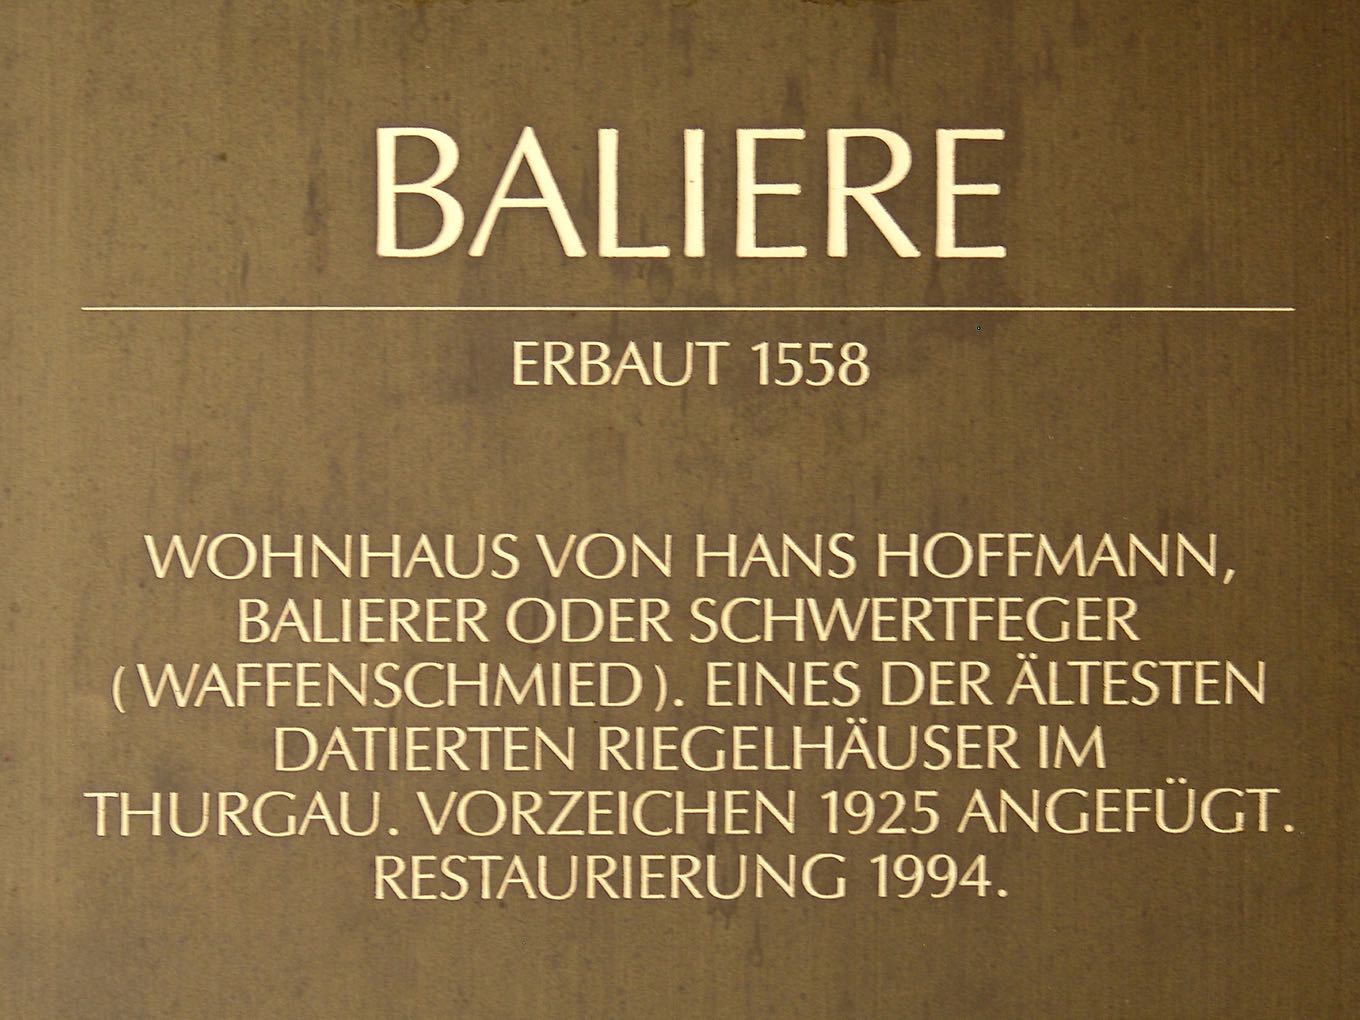 «Baliere» ist eine alte Bezeichnung für den Begriff «Polieren»